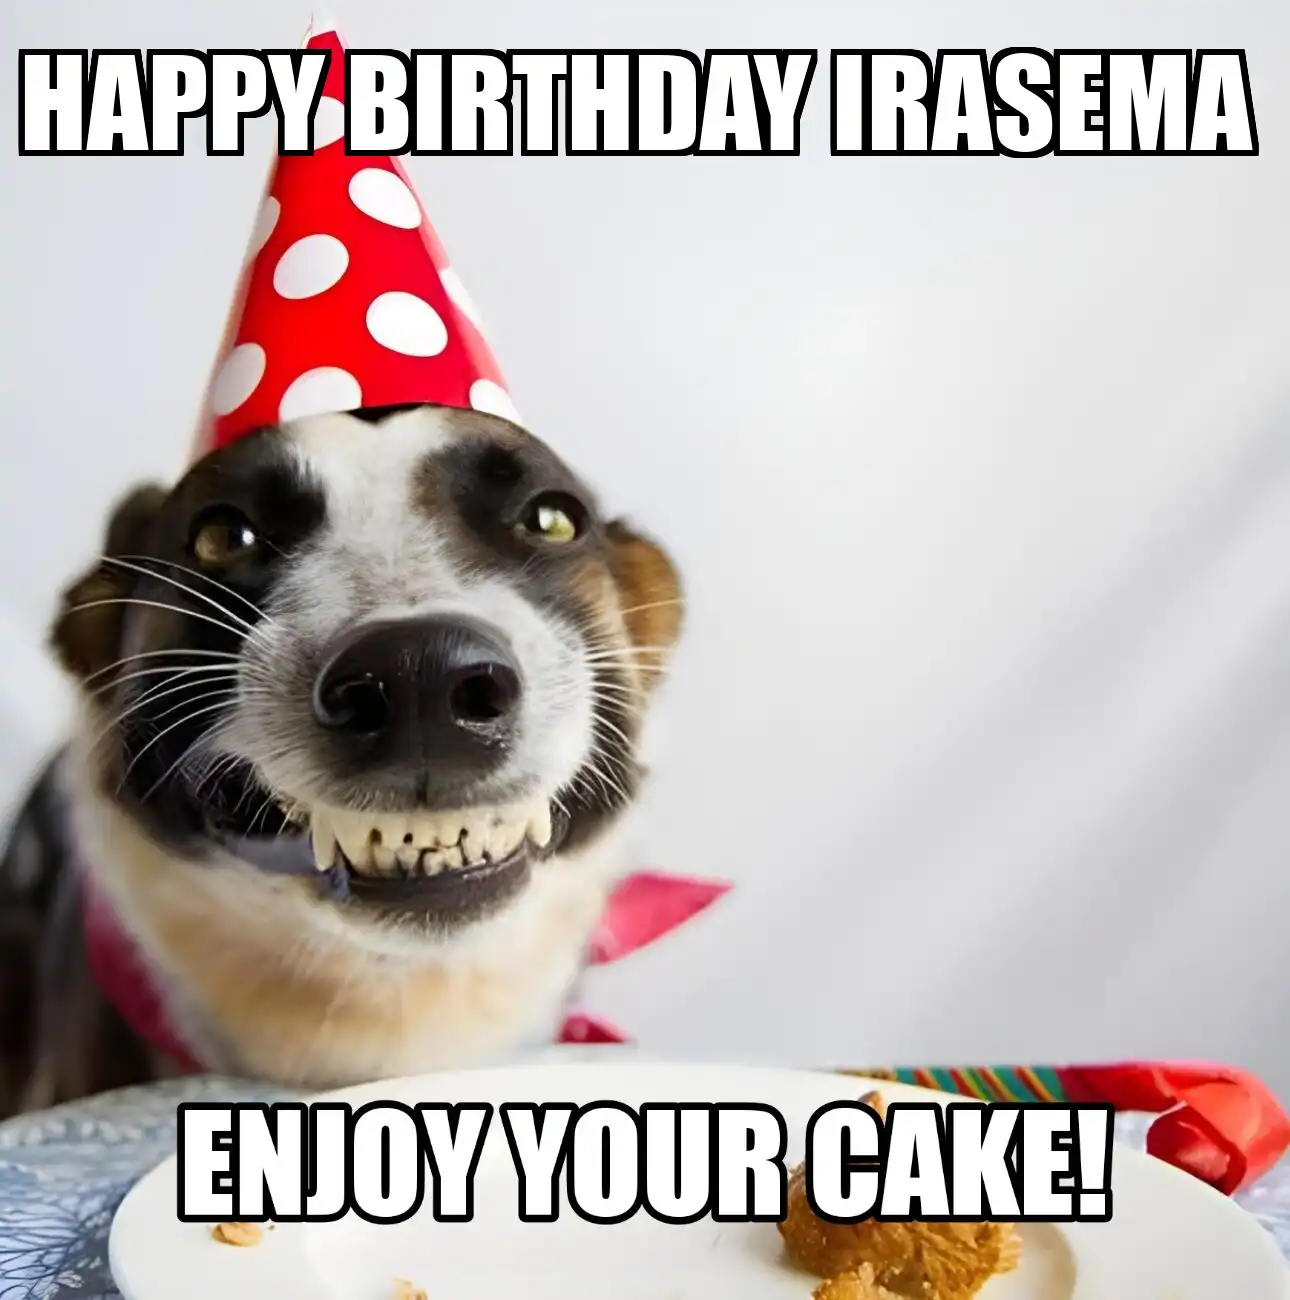 Happy Birthday Irasema Enjoy Your Cake Dog Meme